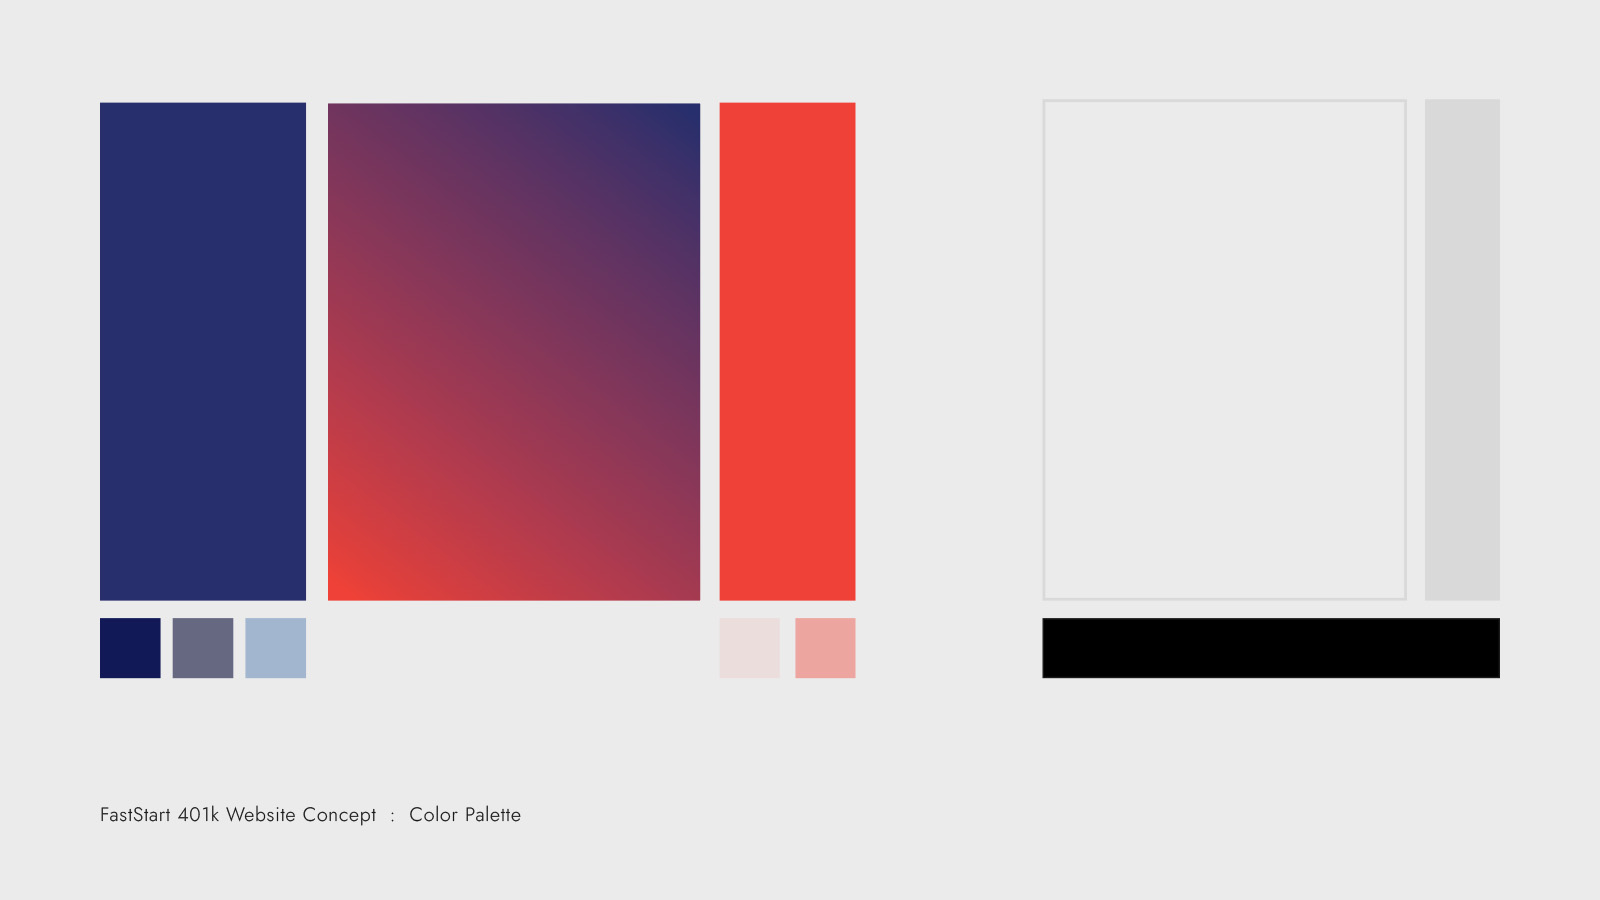 Concept slide: FastStart 401k Color Palette